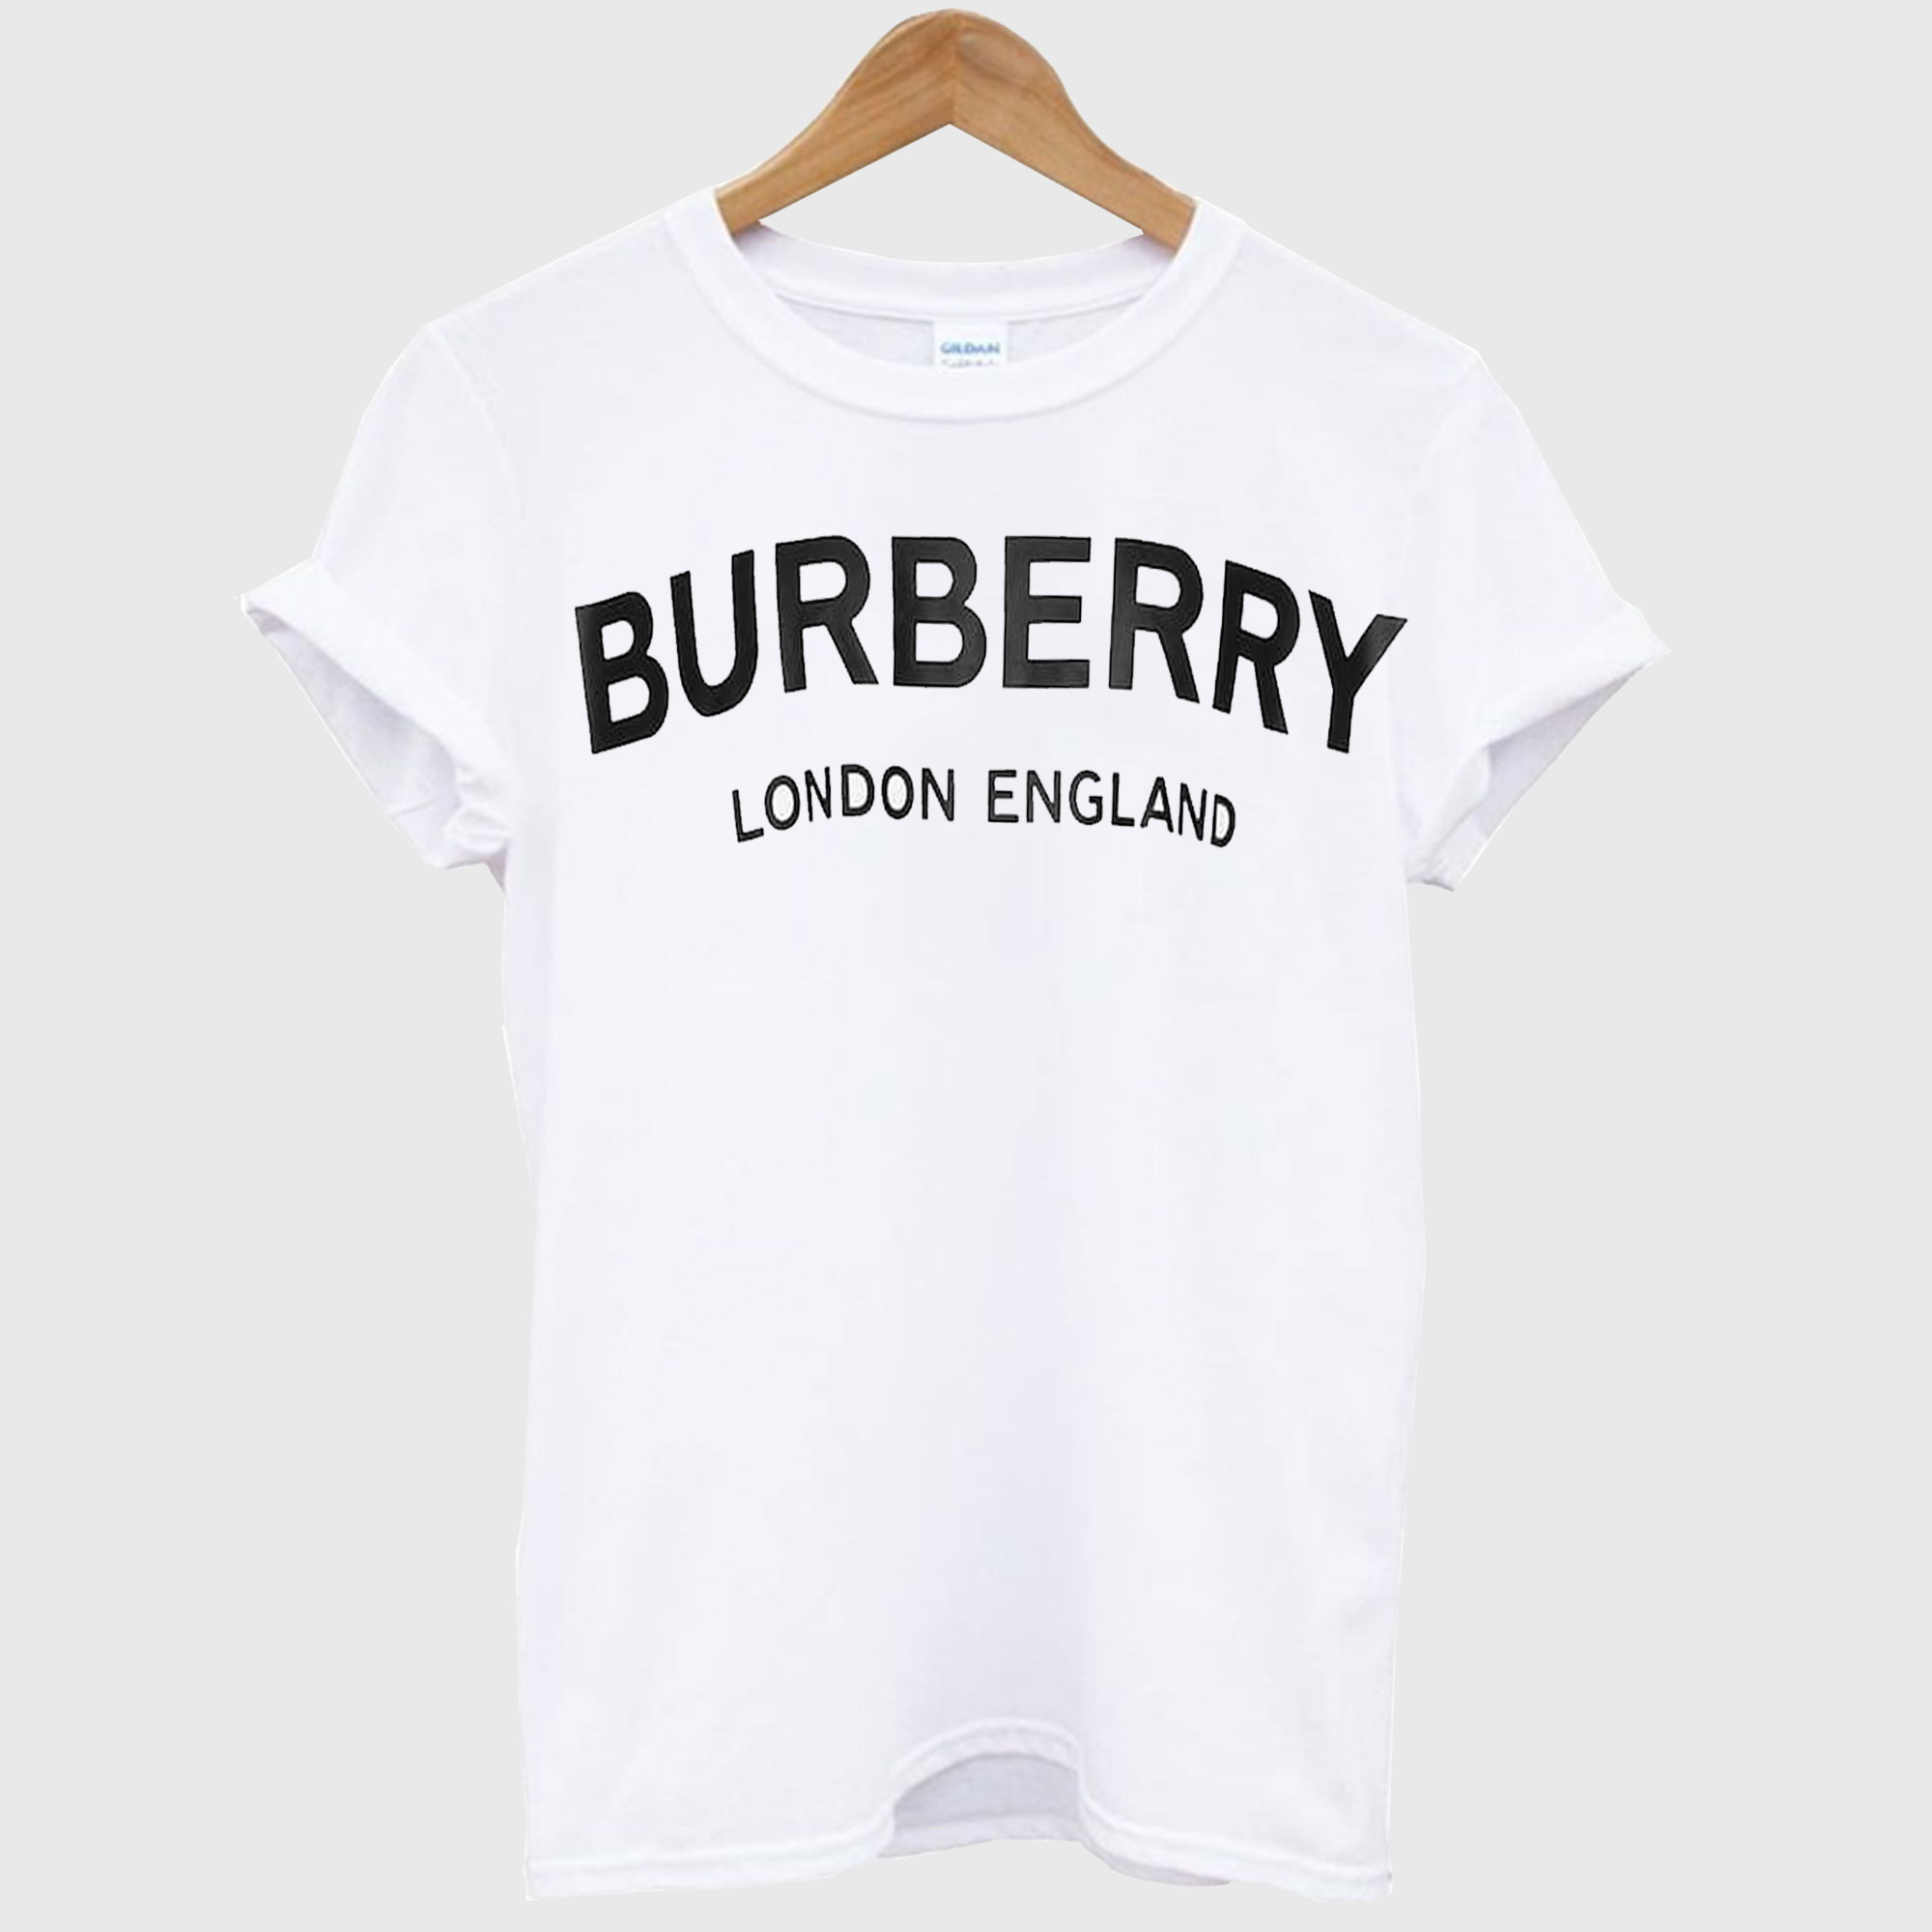 burberry pride shirt